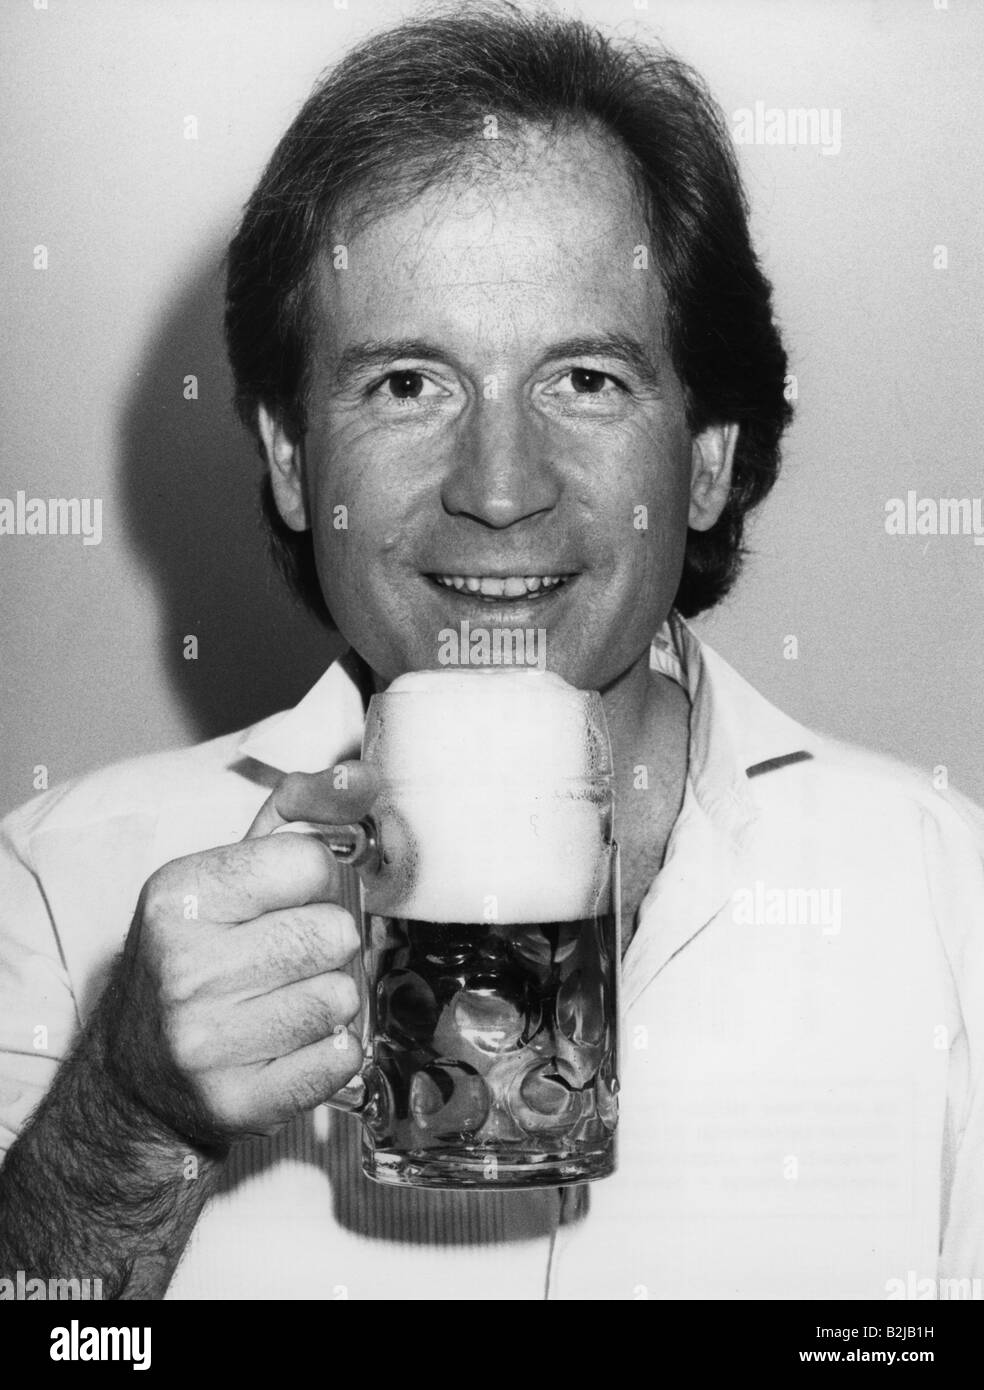 Schautzer, Max, * 14.8.1940, Austrian moderator, portrait, drinking beer, 5.7.1984, Stock Photo